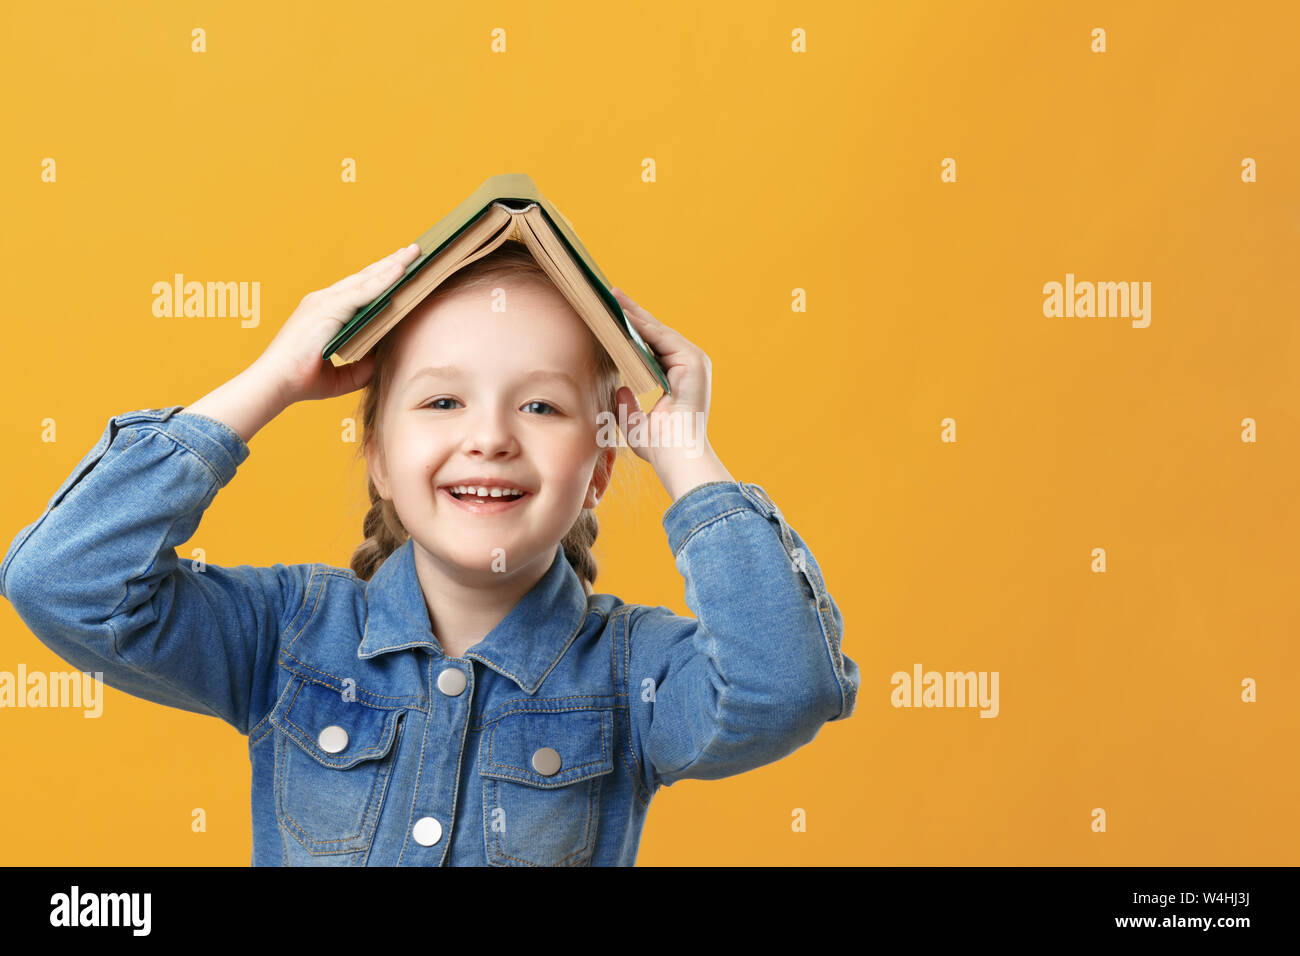 Portrait d'une drôle de petite fille sur un fond jaune. L'élève a un livre sur la tête. Banque D'Images